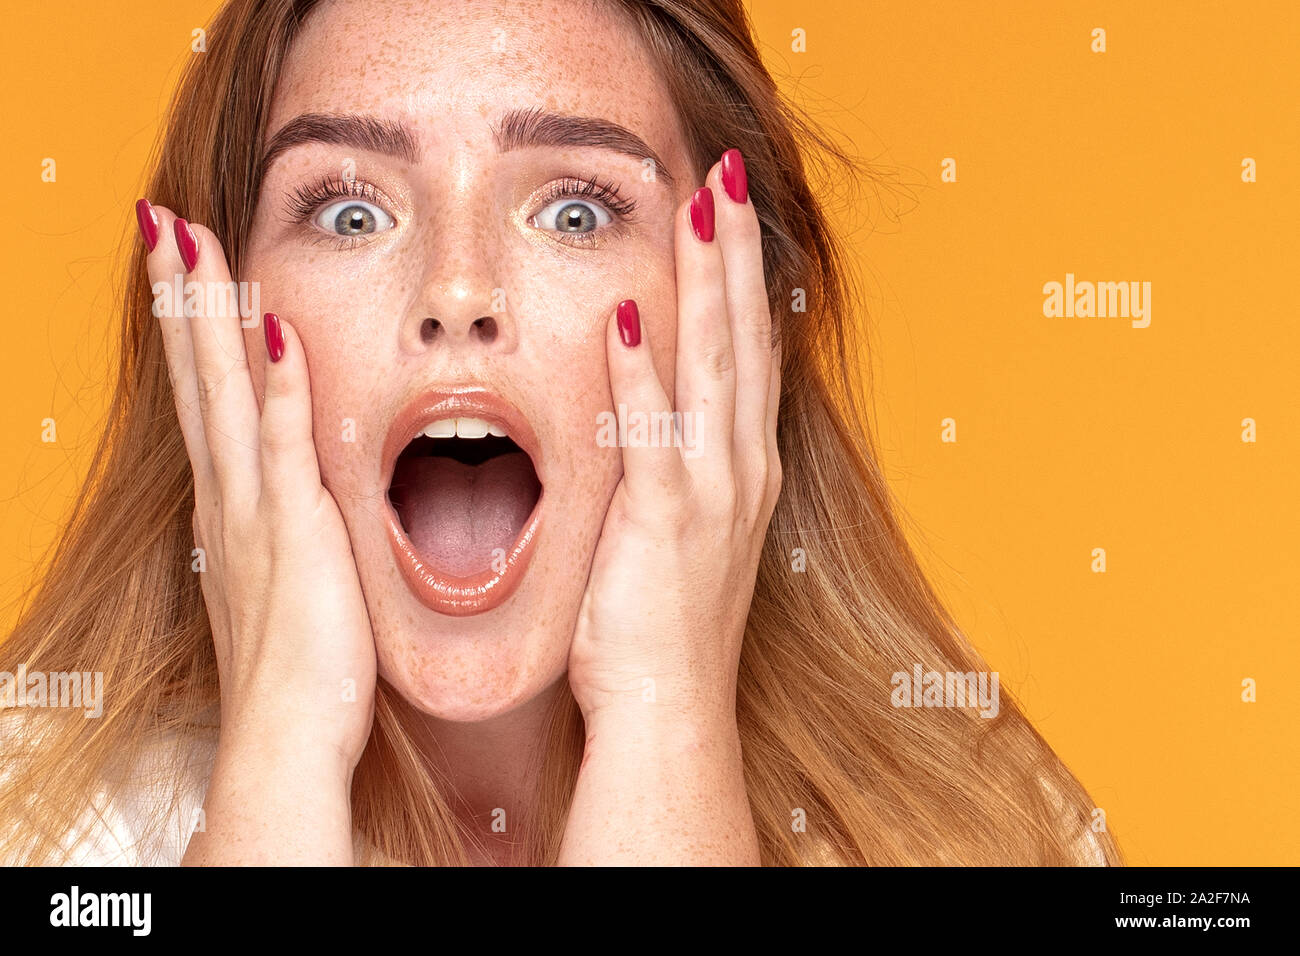 Emotionale glückliche junge Ingwer Frau mit Sommersprossen im Gesicht. Menschlichen Ausdruck, Emotionen Konzept. Gelbe Farbe studio Hintergrund. Stockfoto